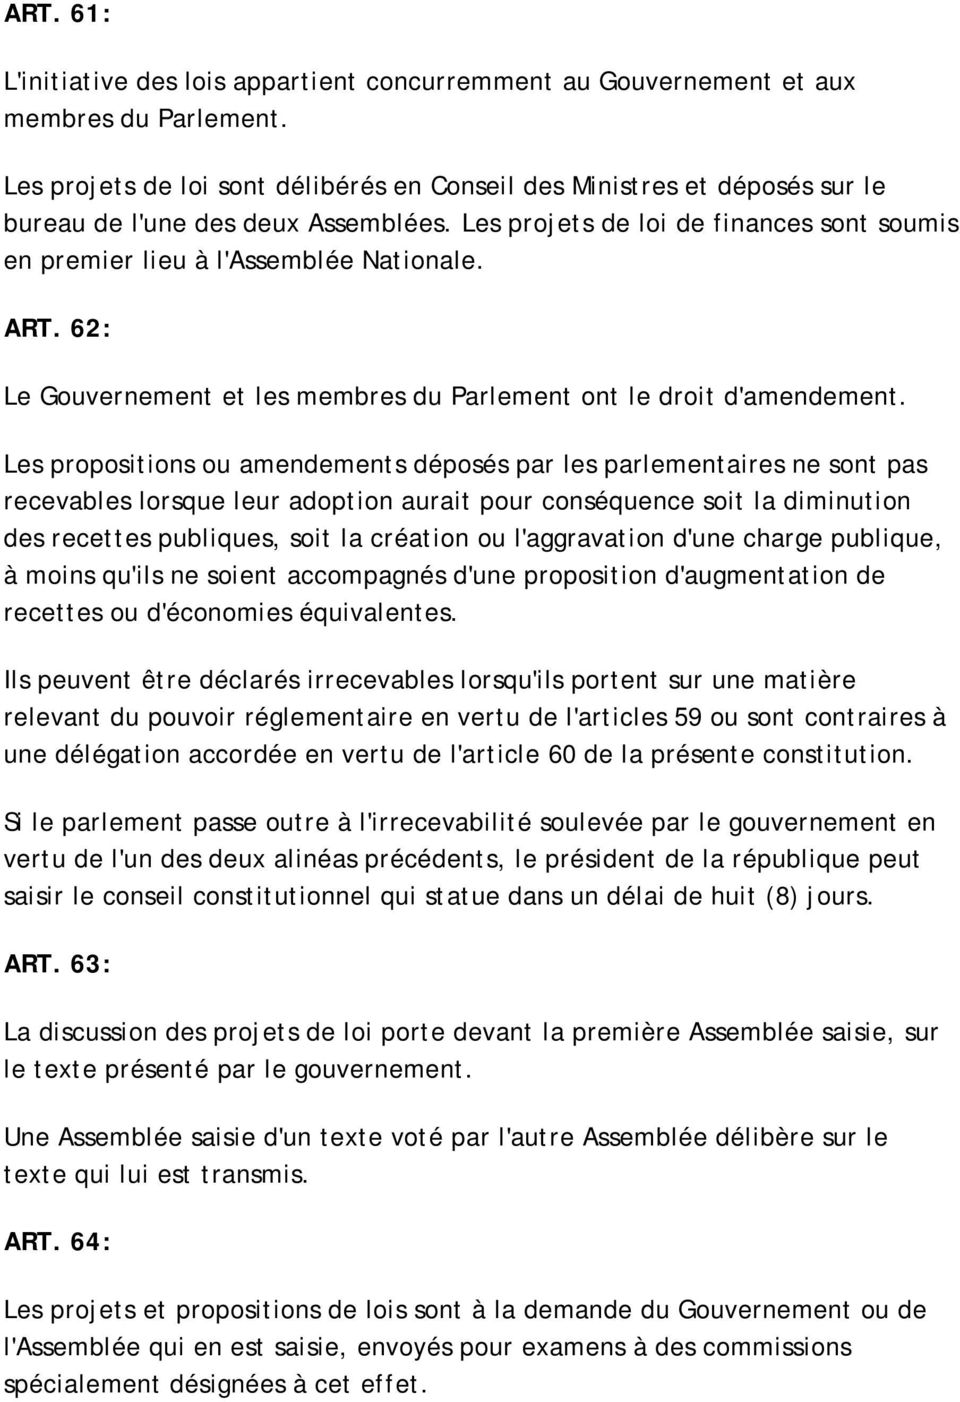 ART. 62: Le Gouvernement et les membres du Parlement ont le droit d'amendement.